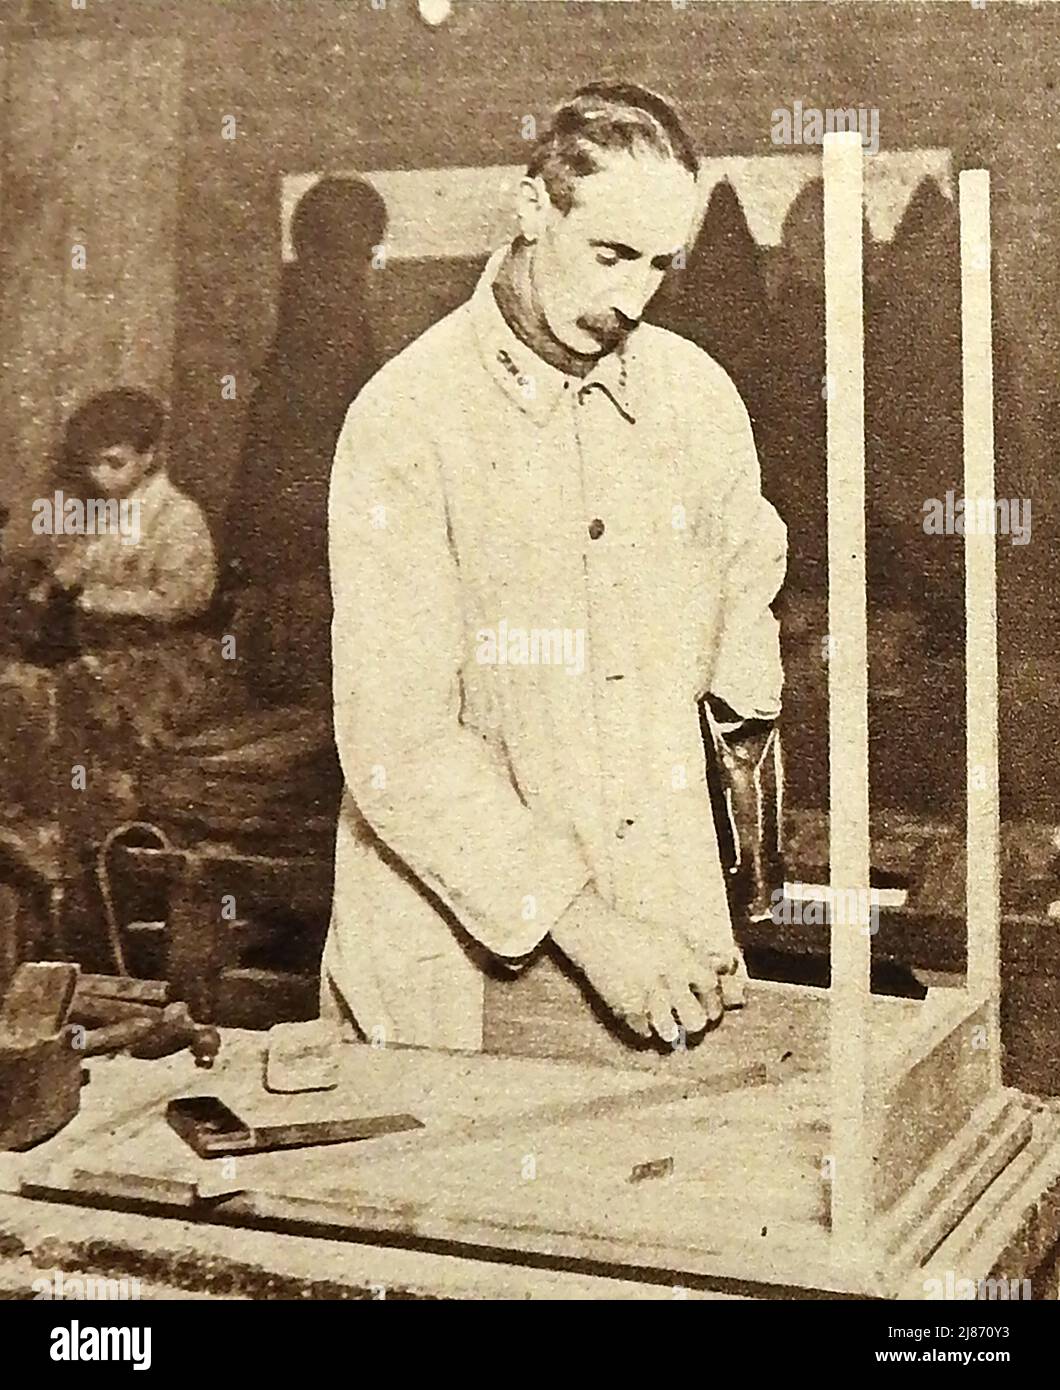 WWI - Rehabilitación de soldados británicos heridos en la Primera Guerra Mundial - Un hombre armado en el centro de rehabilitación de militares heridos en los talleres conmemorativos Lord Roberts, Fulham, .jpg - 2J8 Foto de stock